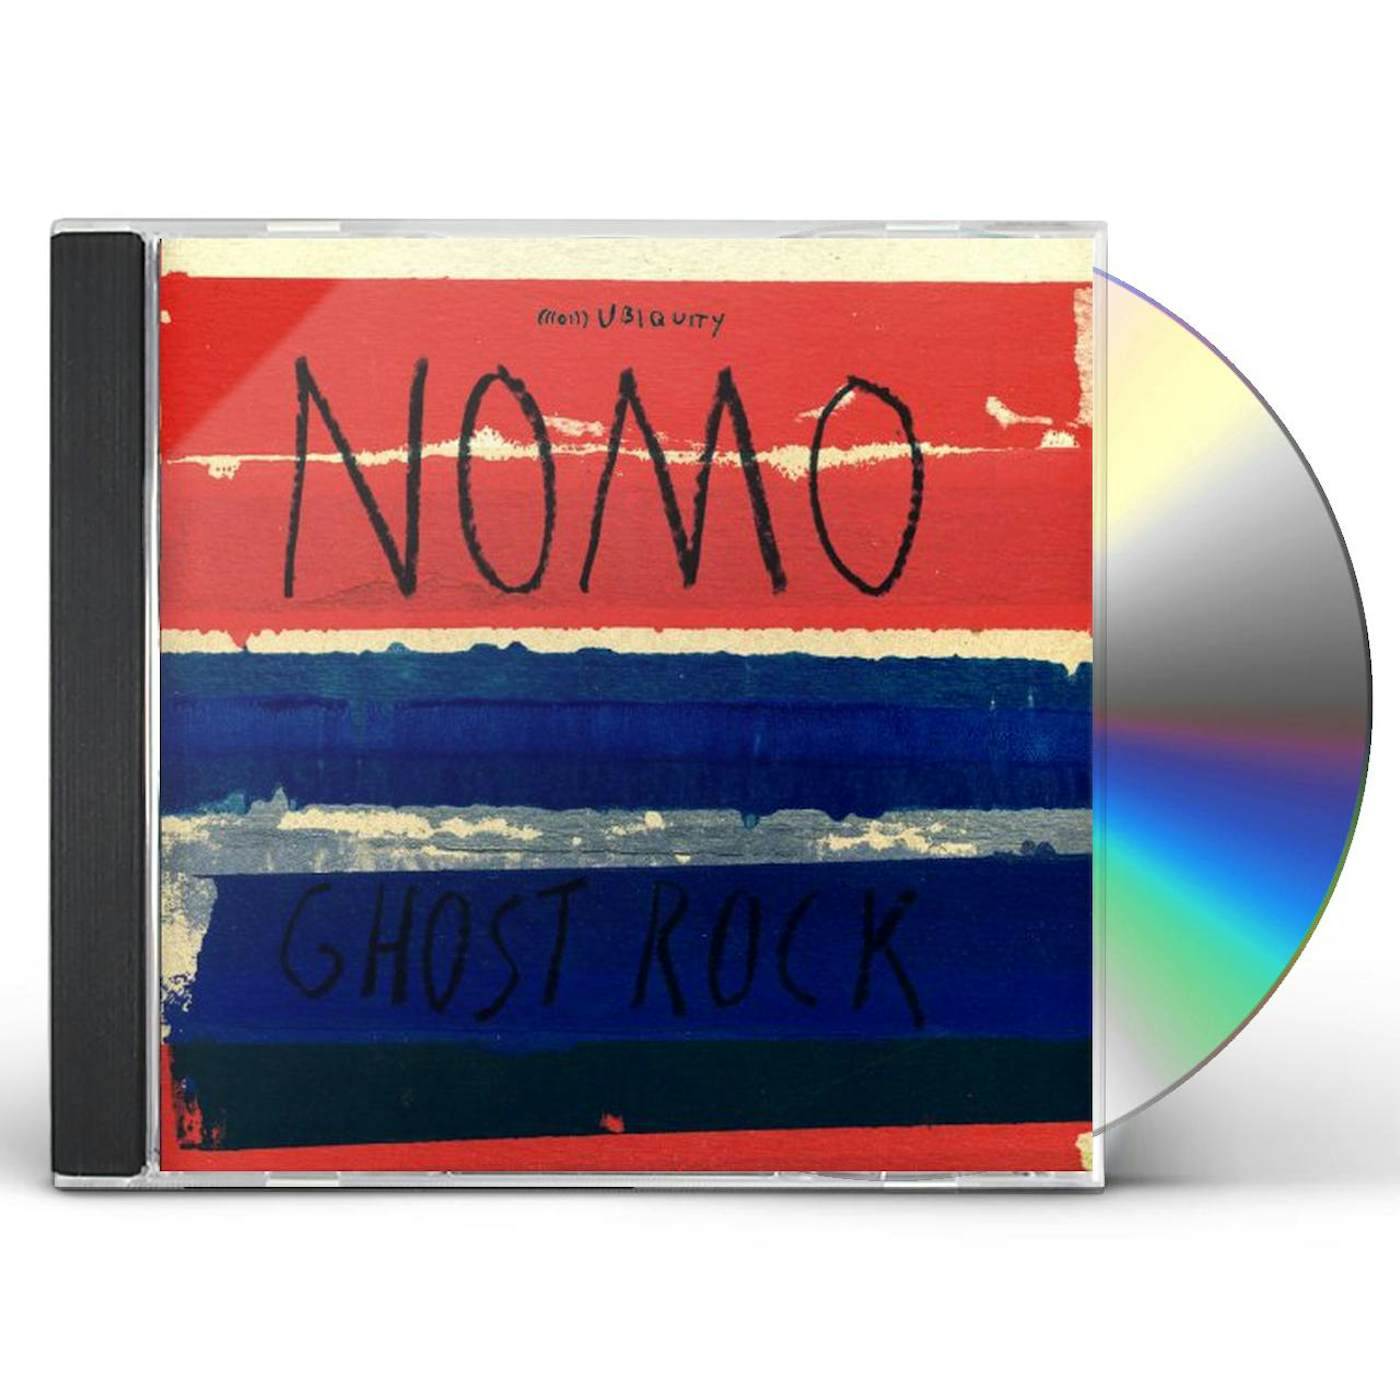 Nomo GHOST ROCK CD